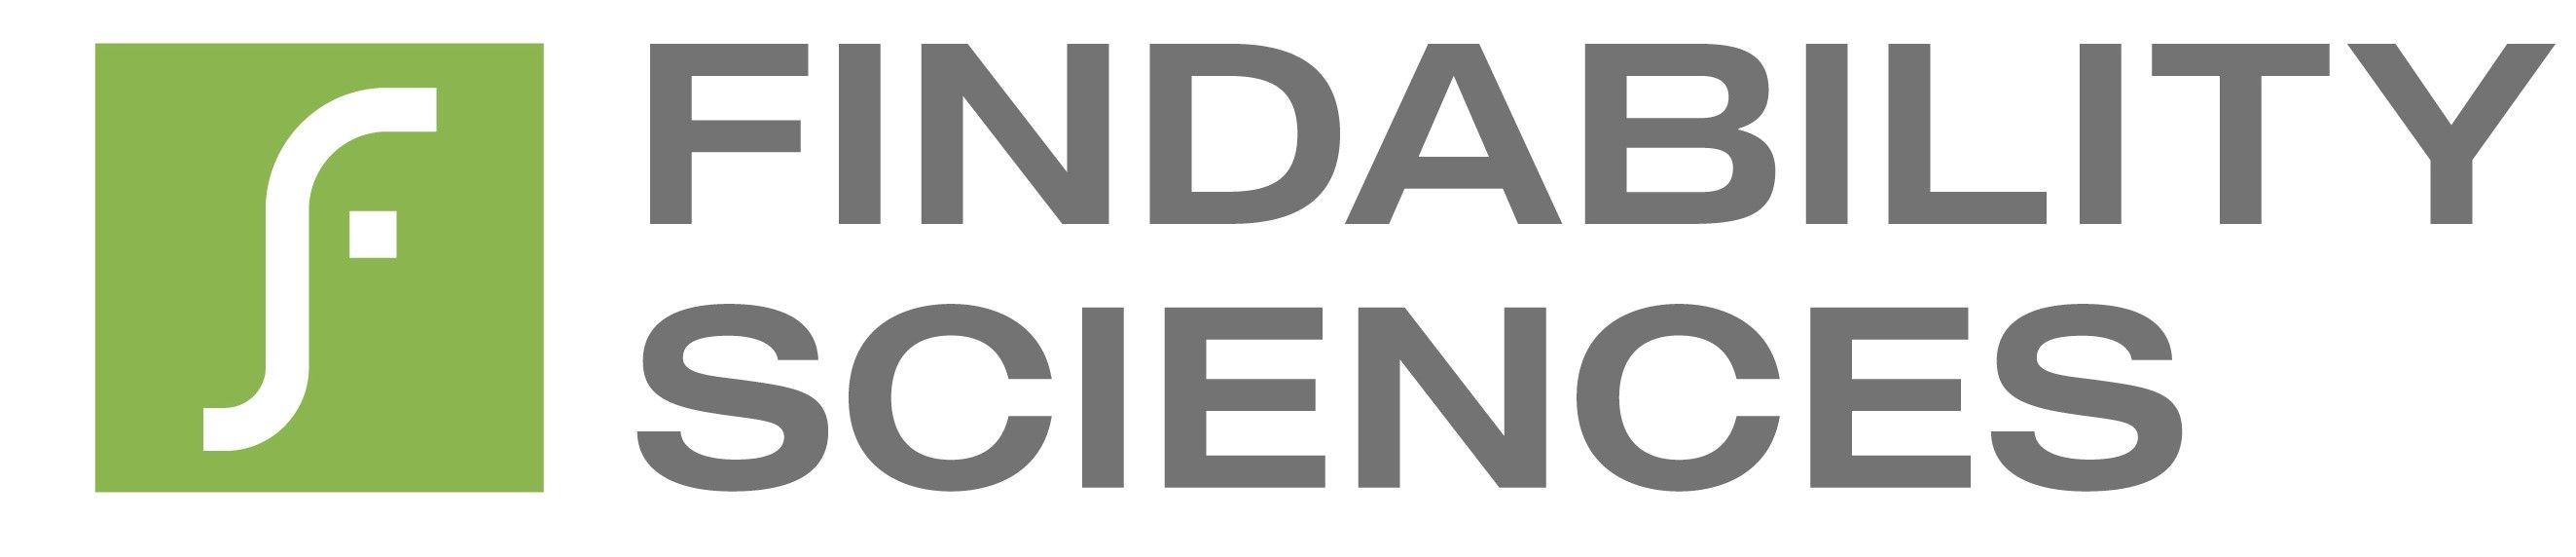 findabilitysciences Logo